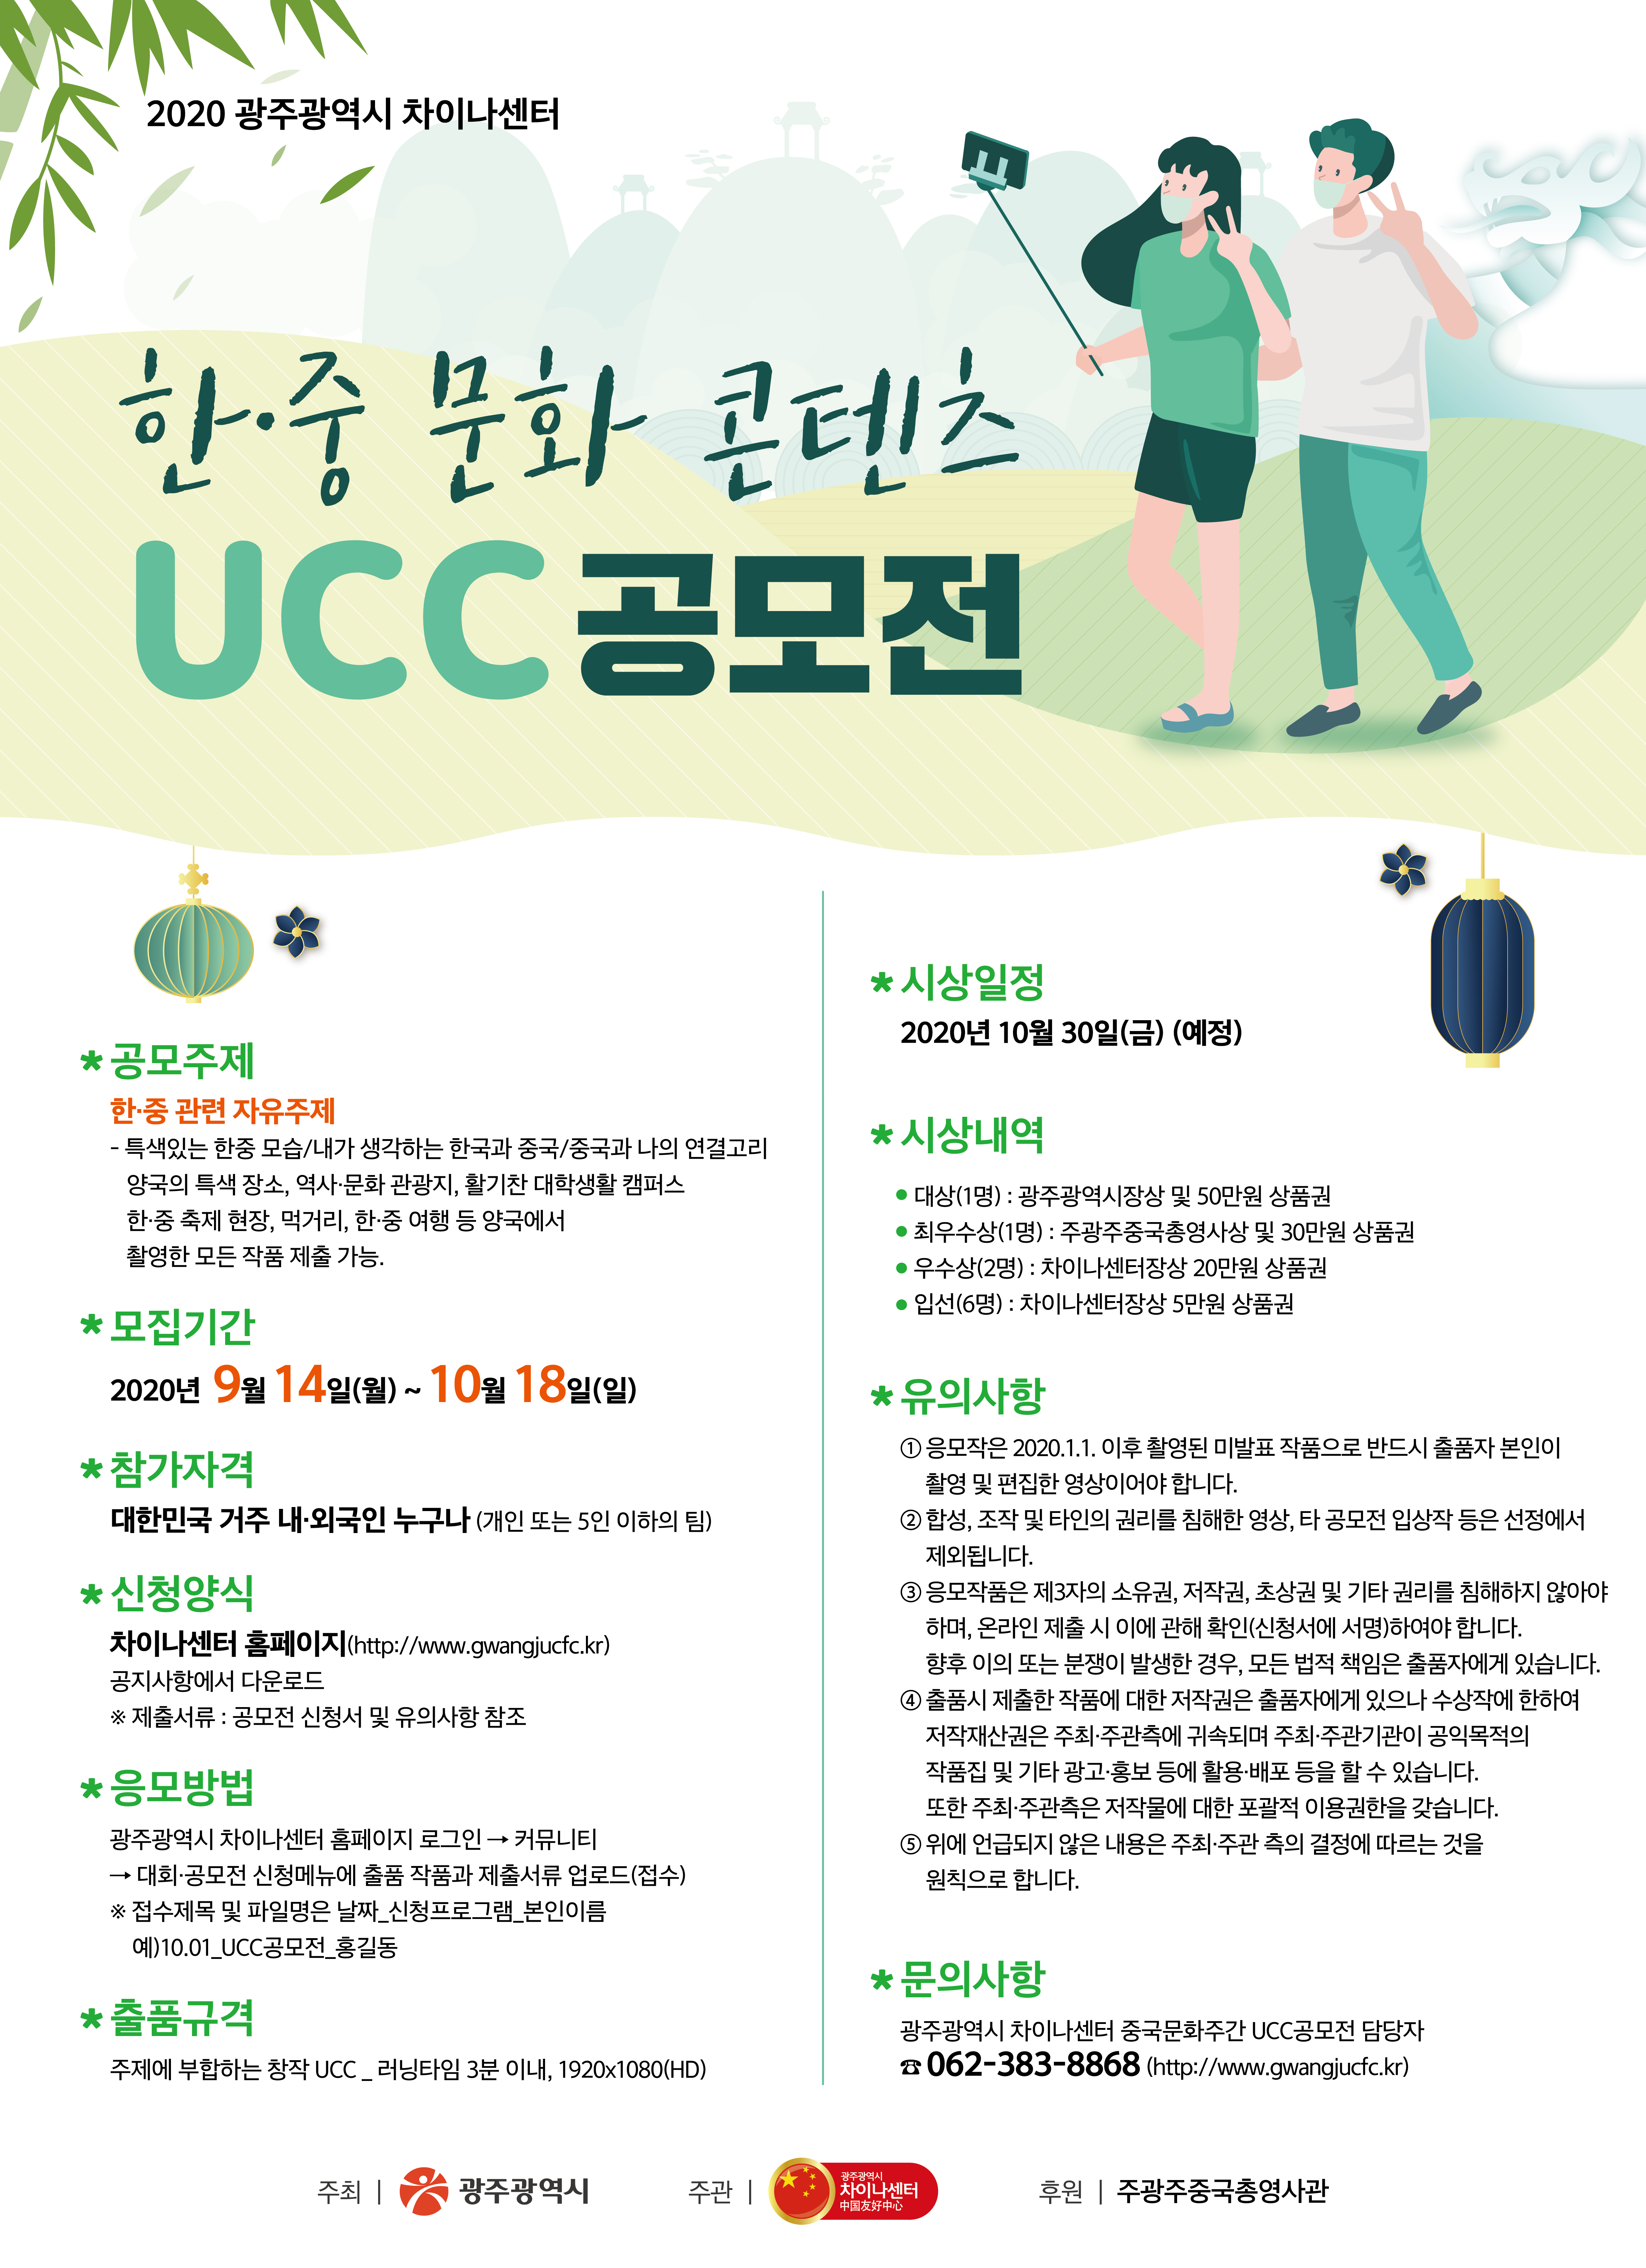 [공모전] 2020 광주광역시 차이나센터 한중 문화 콘텐츠 UCC공모전 개최 안내